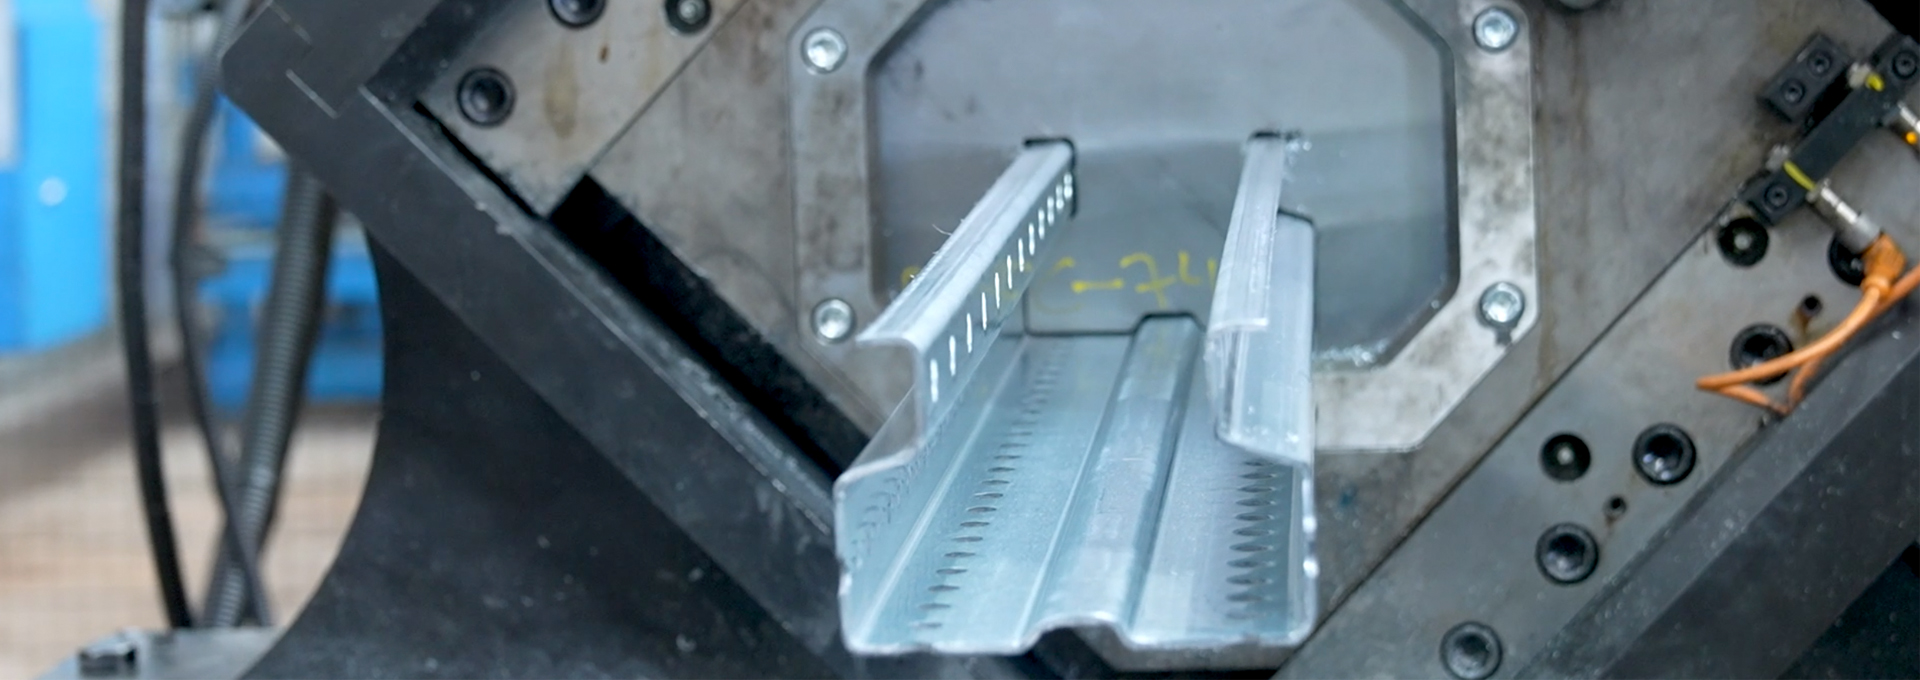 Foto de portada del vídeo soluciones de Brausa, fabricante de perfiles de acero conformado en frío